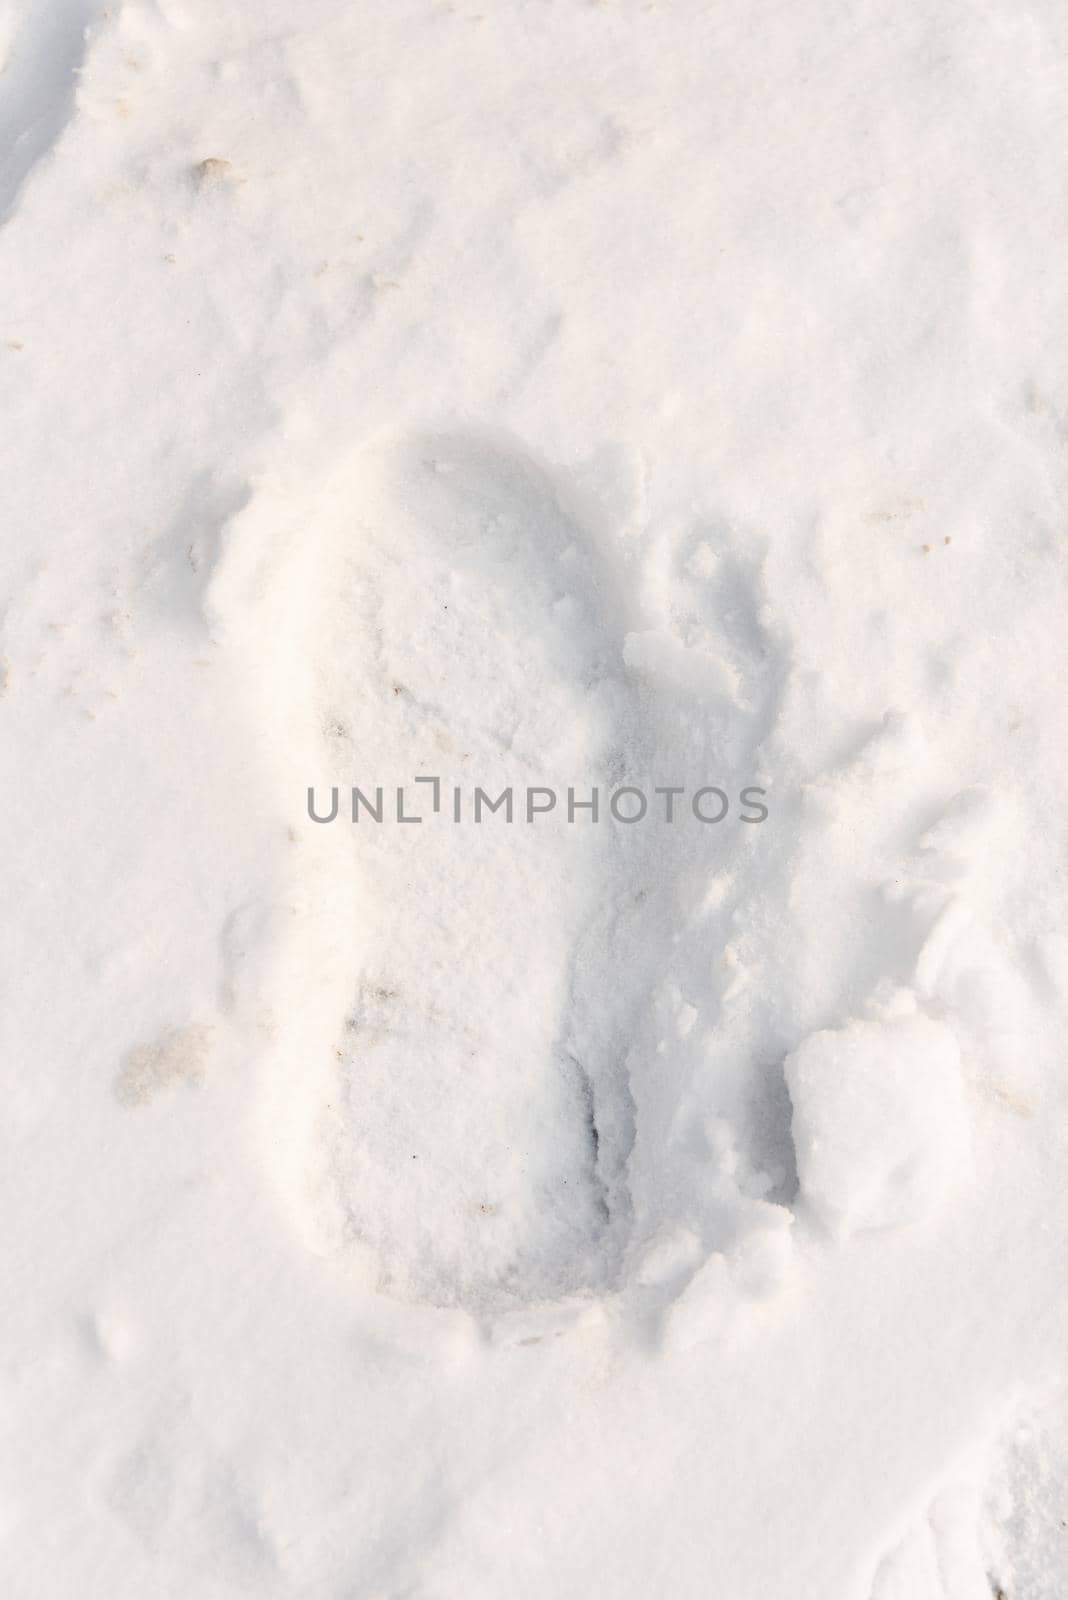 footprints on the snow under sunlight close-up by karpovkottt